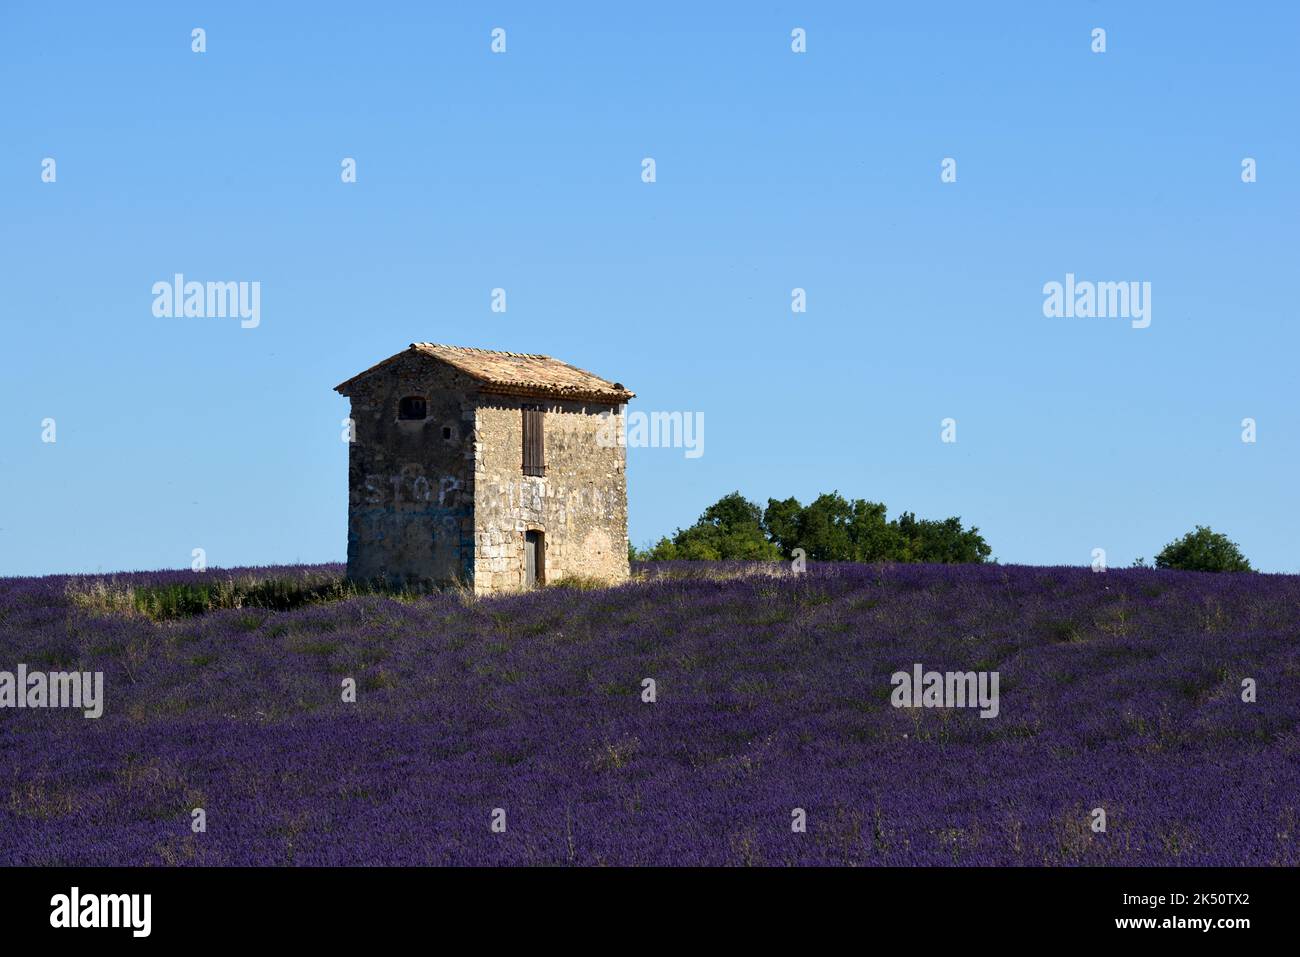 Petite maison, cabane ou Cabanon parmi les champs de lavande du plateau de Valensole Provence France Banque D'Images